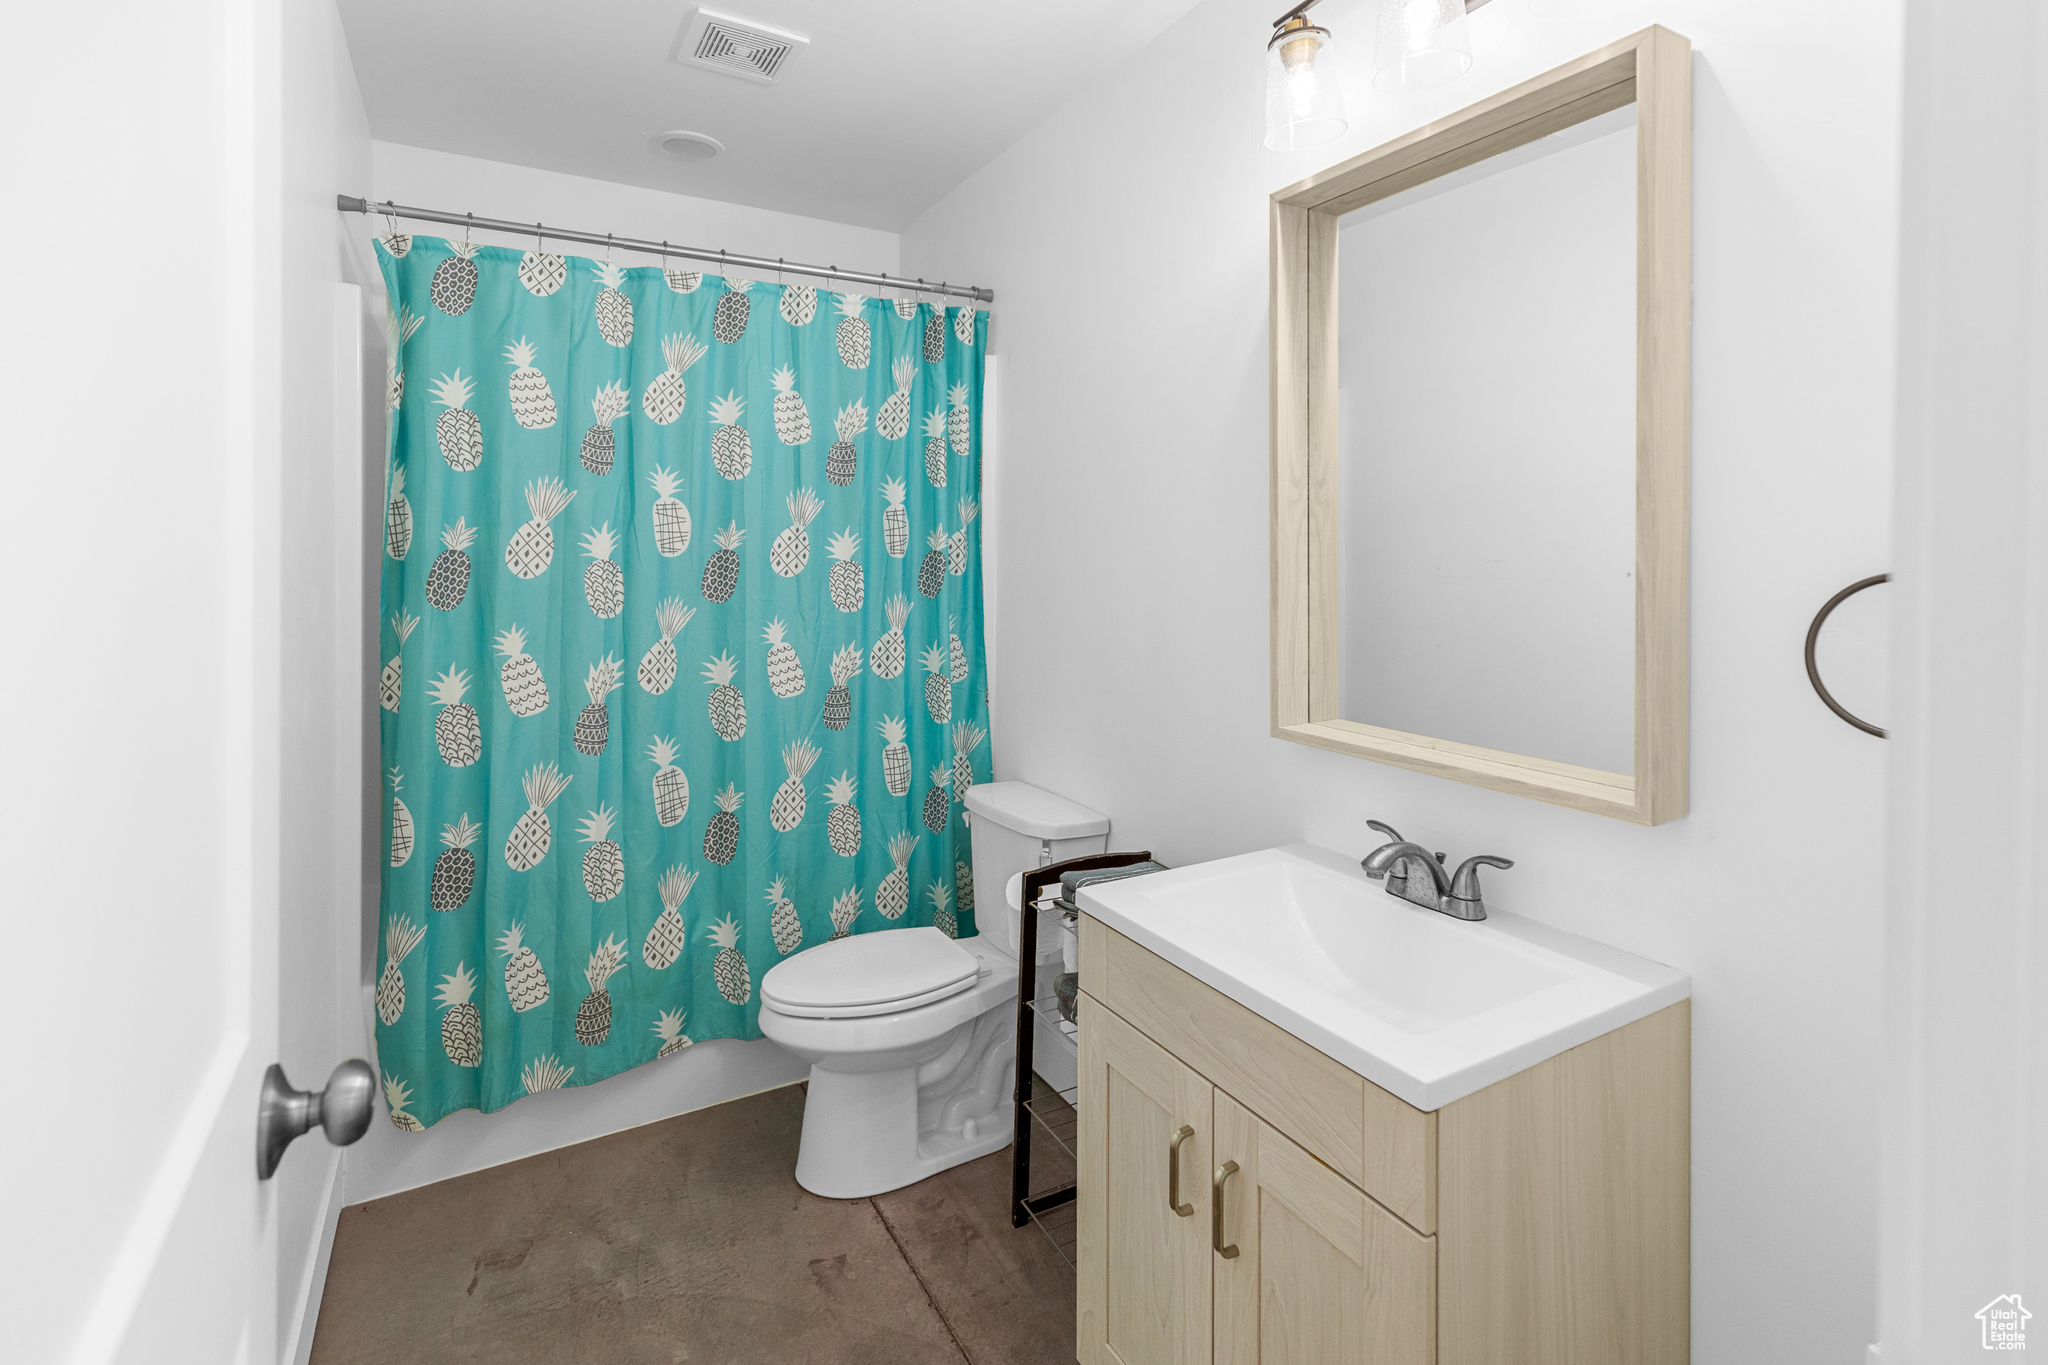 Bathroom with hardwood / wood-style floors, toilet, and oversized vanity